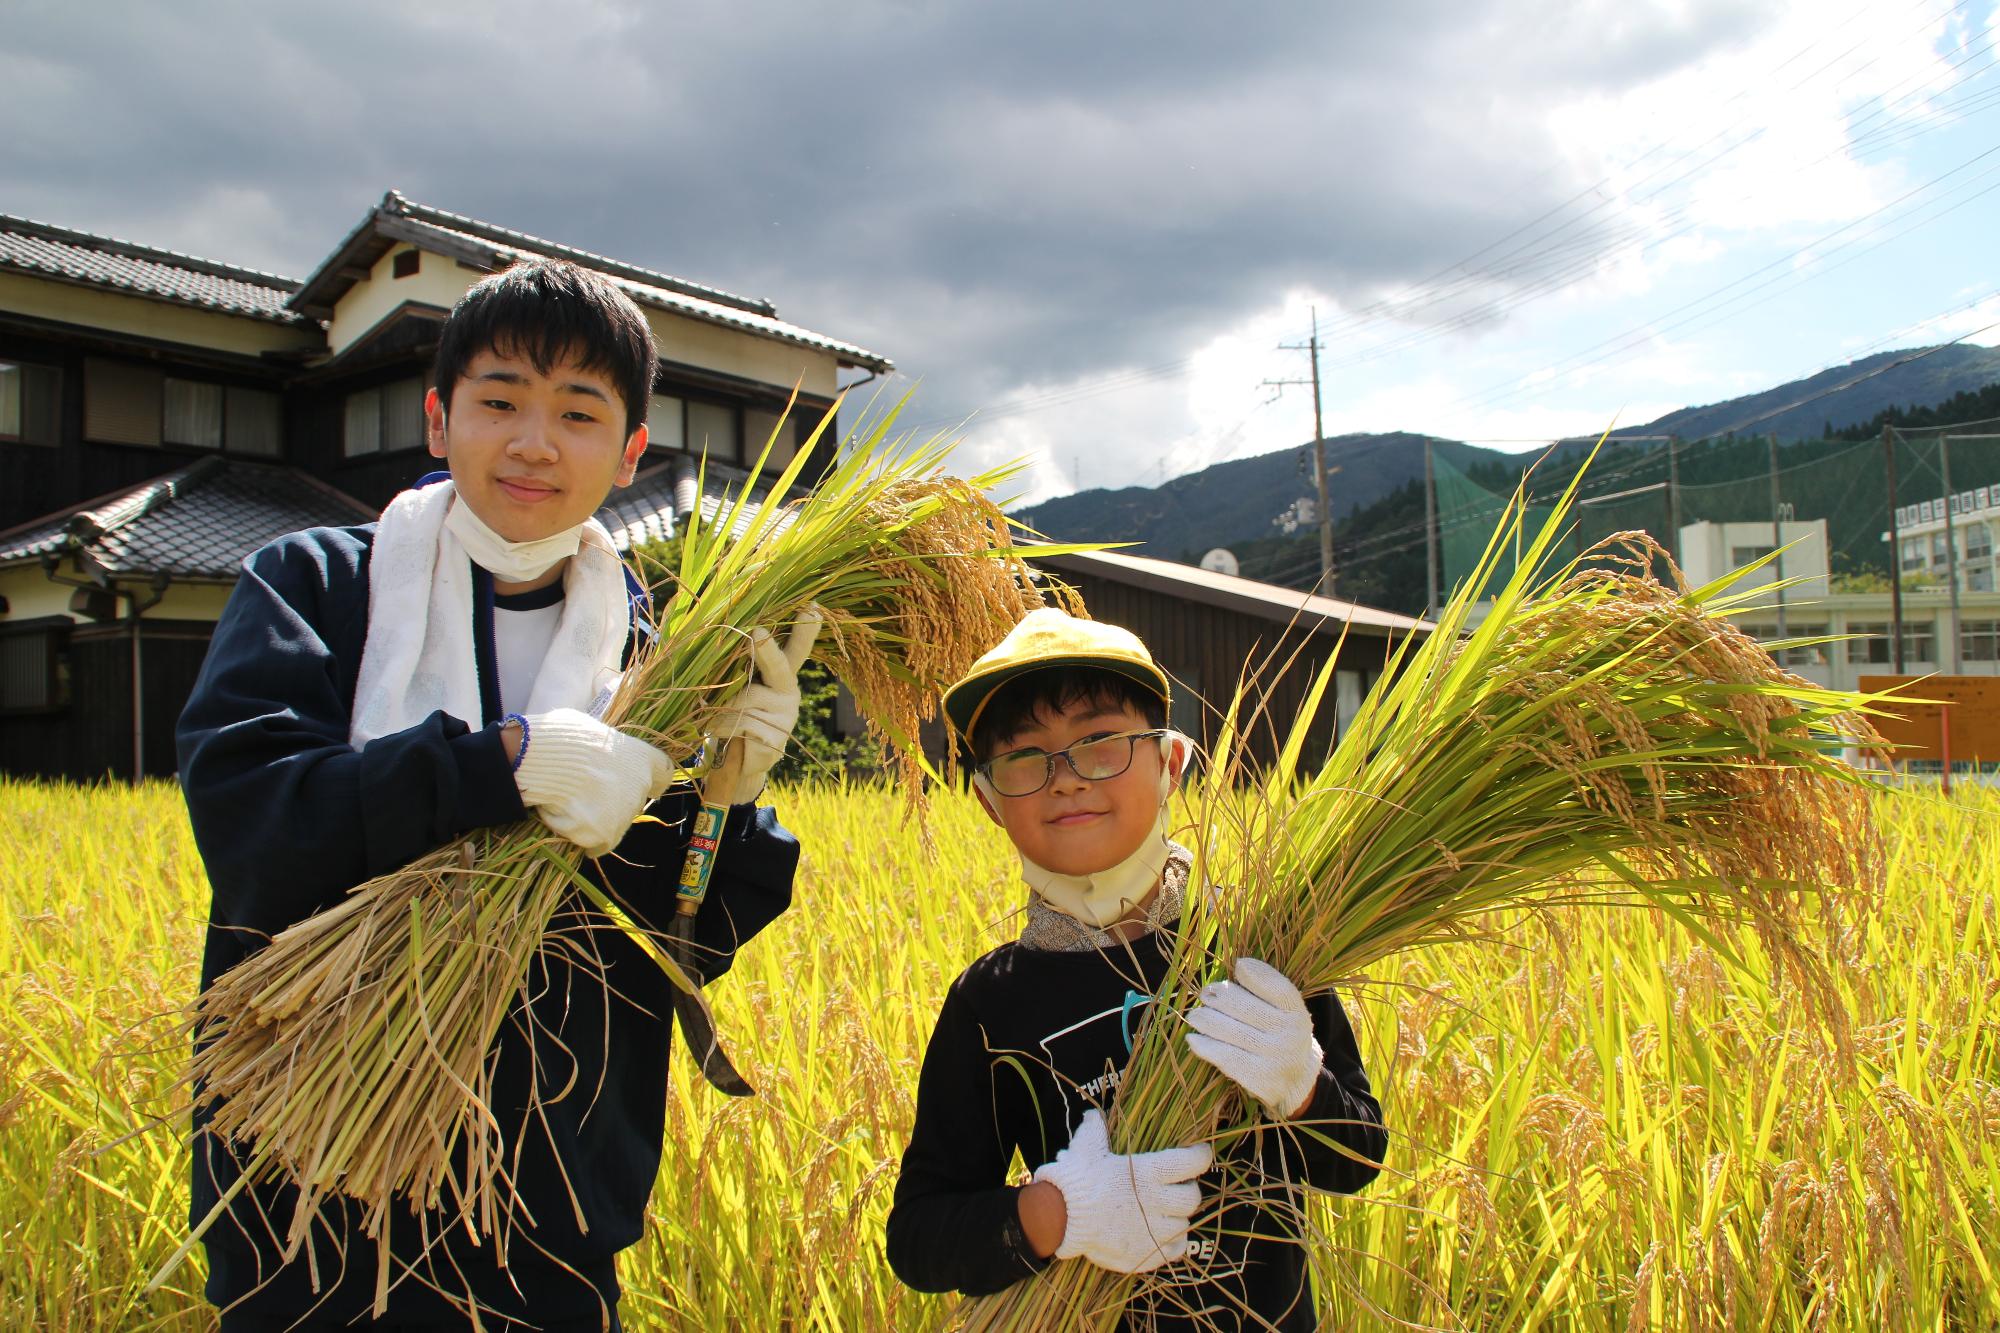 刈った稲の束を抱えている高校生と小学生の写真